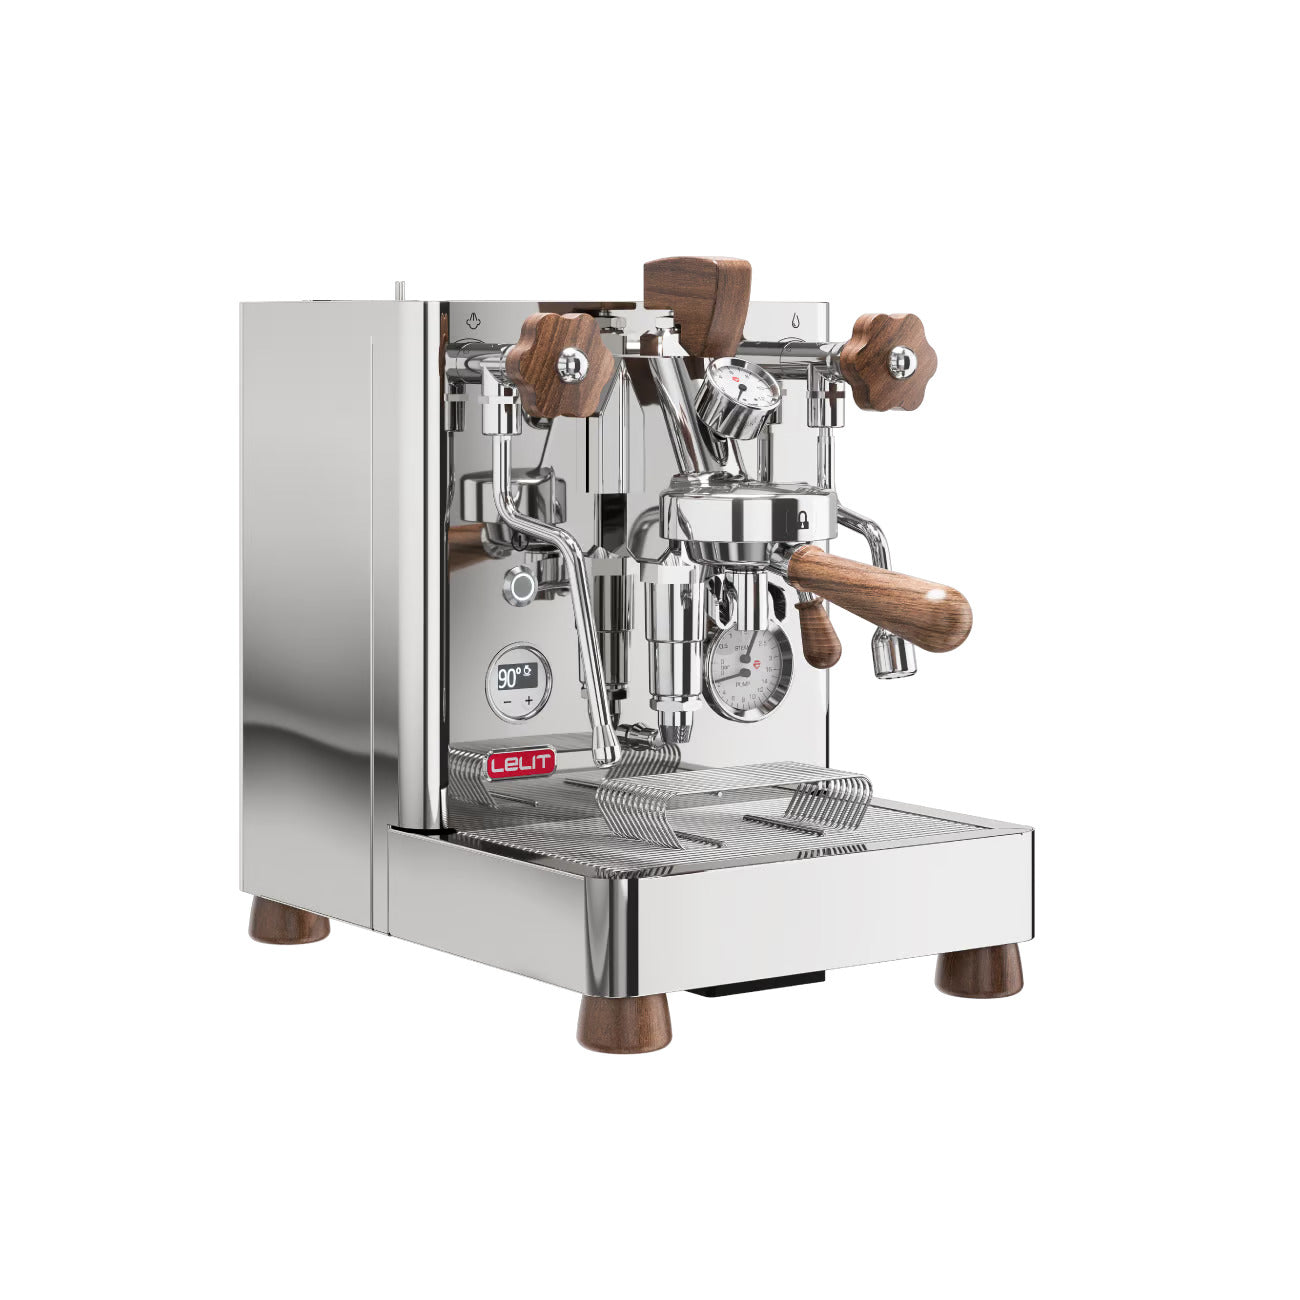 Lelit | Bianca V3 PL162T-EU Espresso Coffee Machine - Espresso Retro Hong Kong